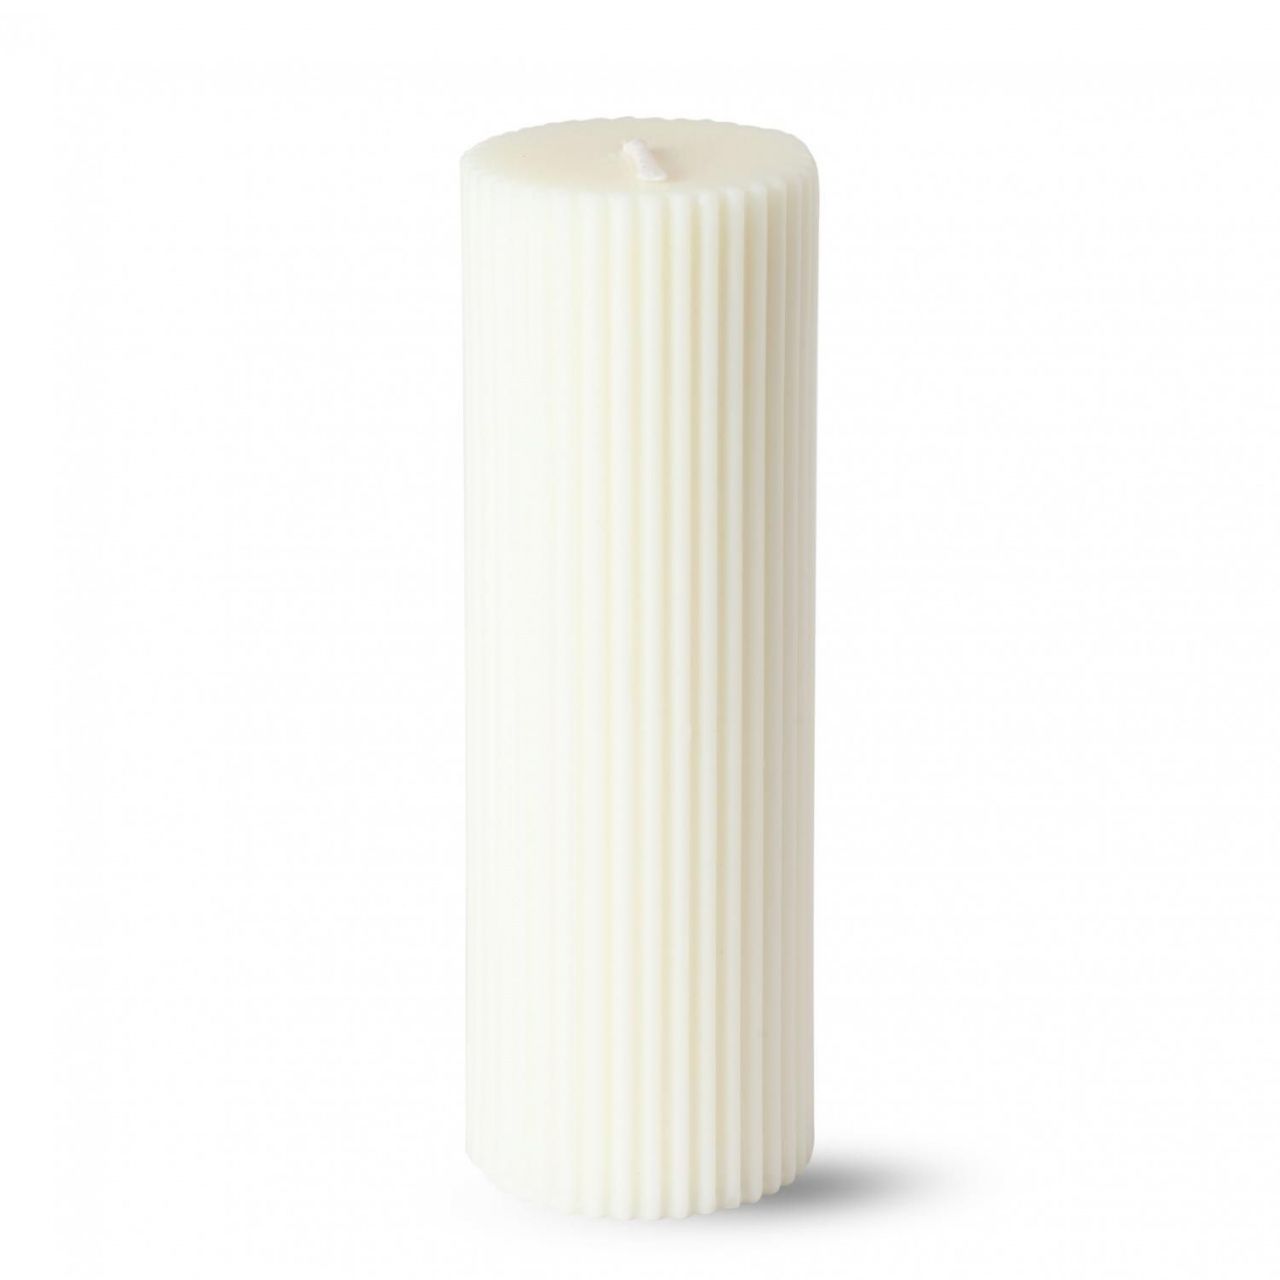 Вертикальная восковая свеча, ребристая, цилиндр. формы 5*7.5 см 35120-15